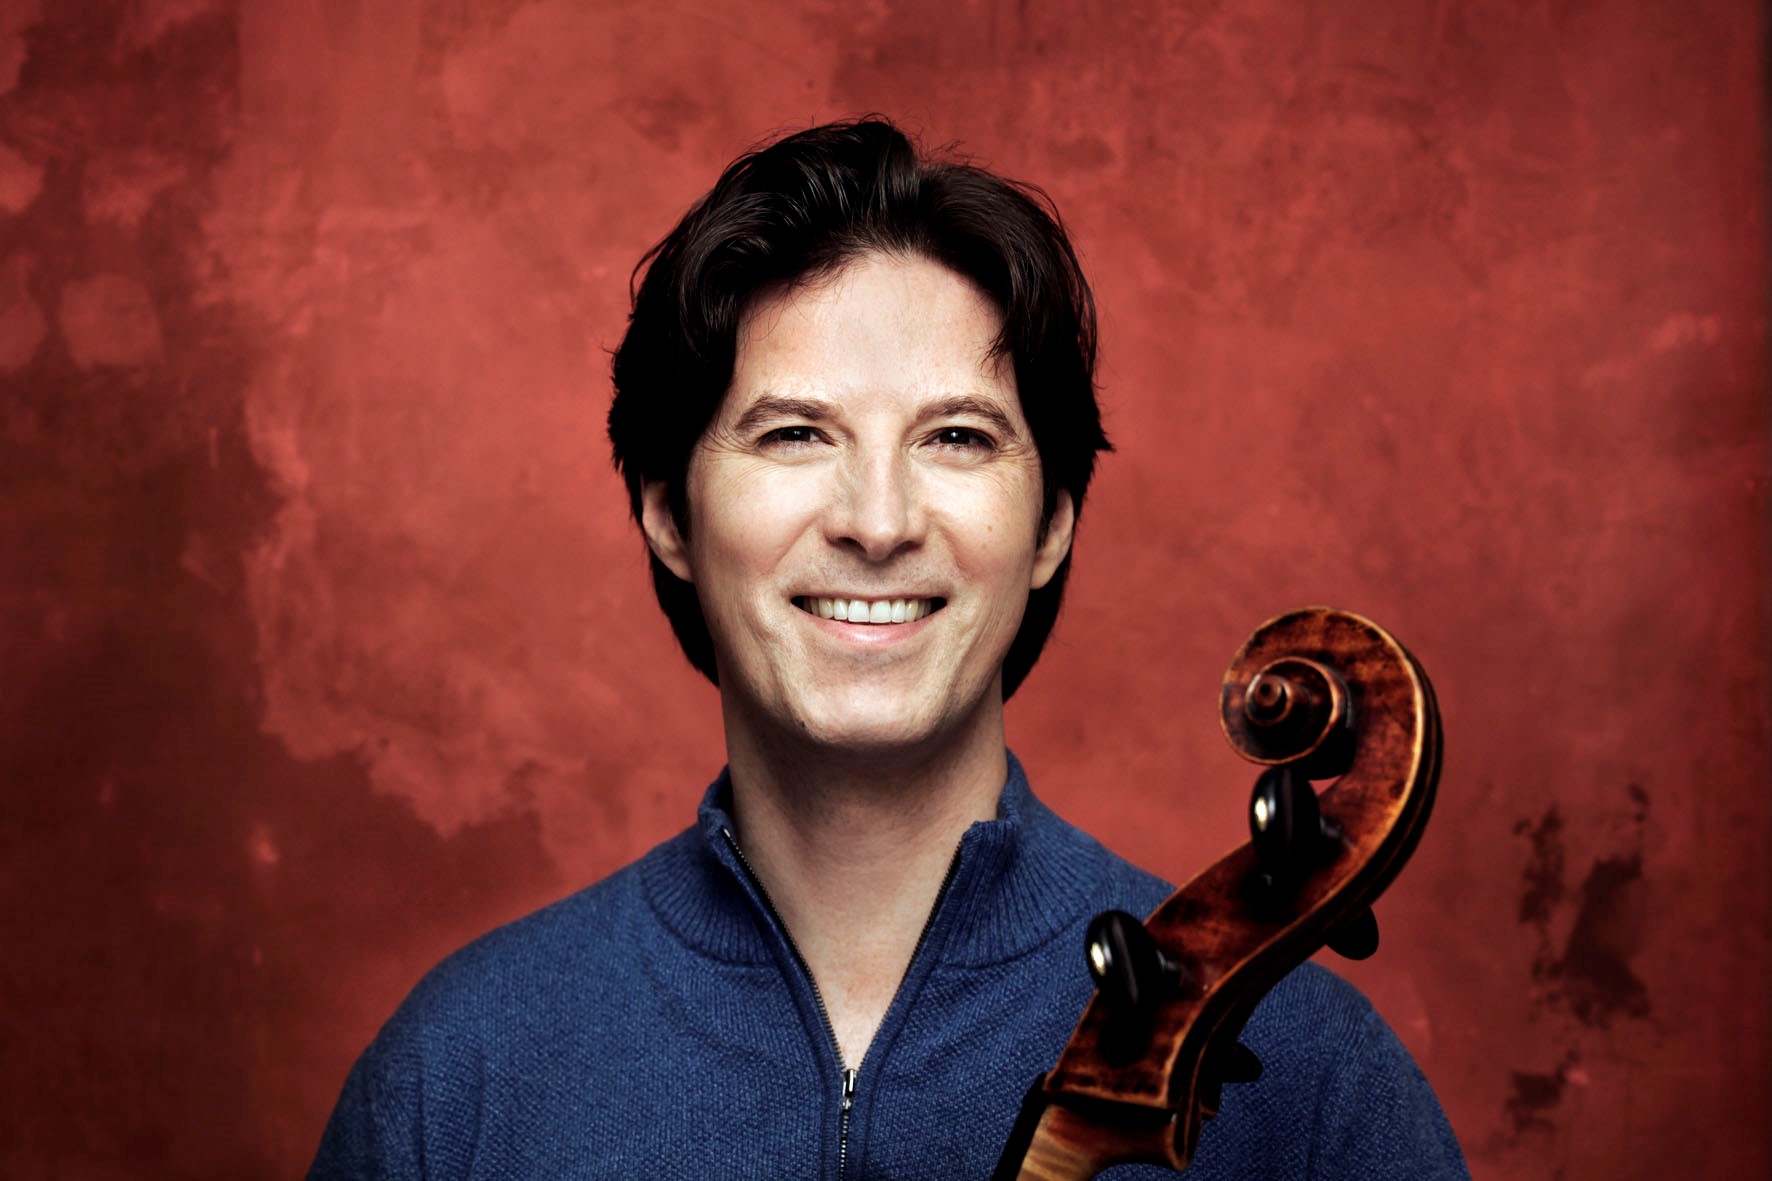 Portraitaufnahme des Cellist Daniel Müller-Schott. Er steht vor einer roten Wand und trägt einen blauen Pullover.